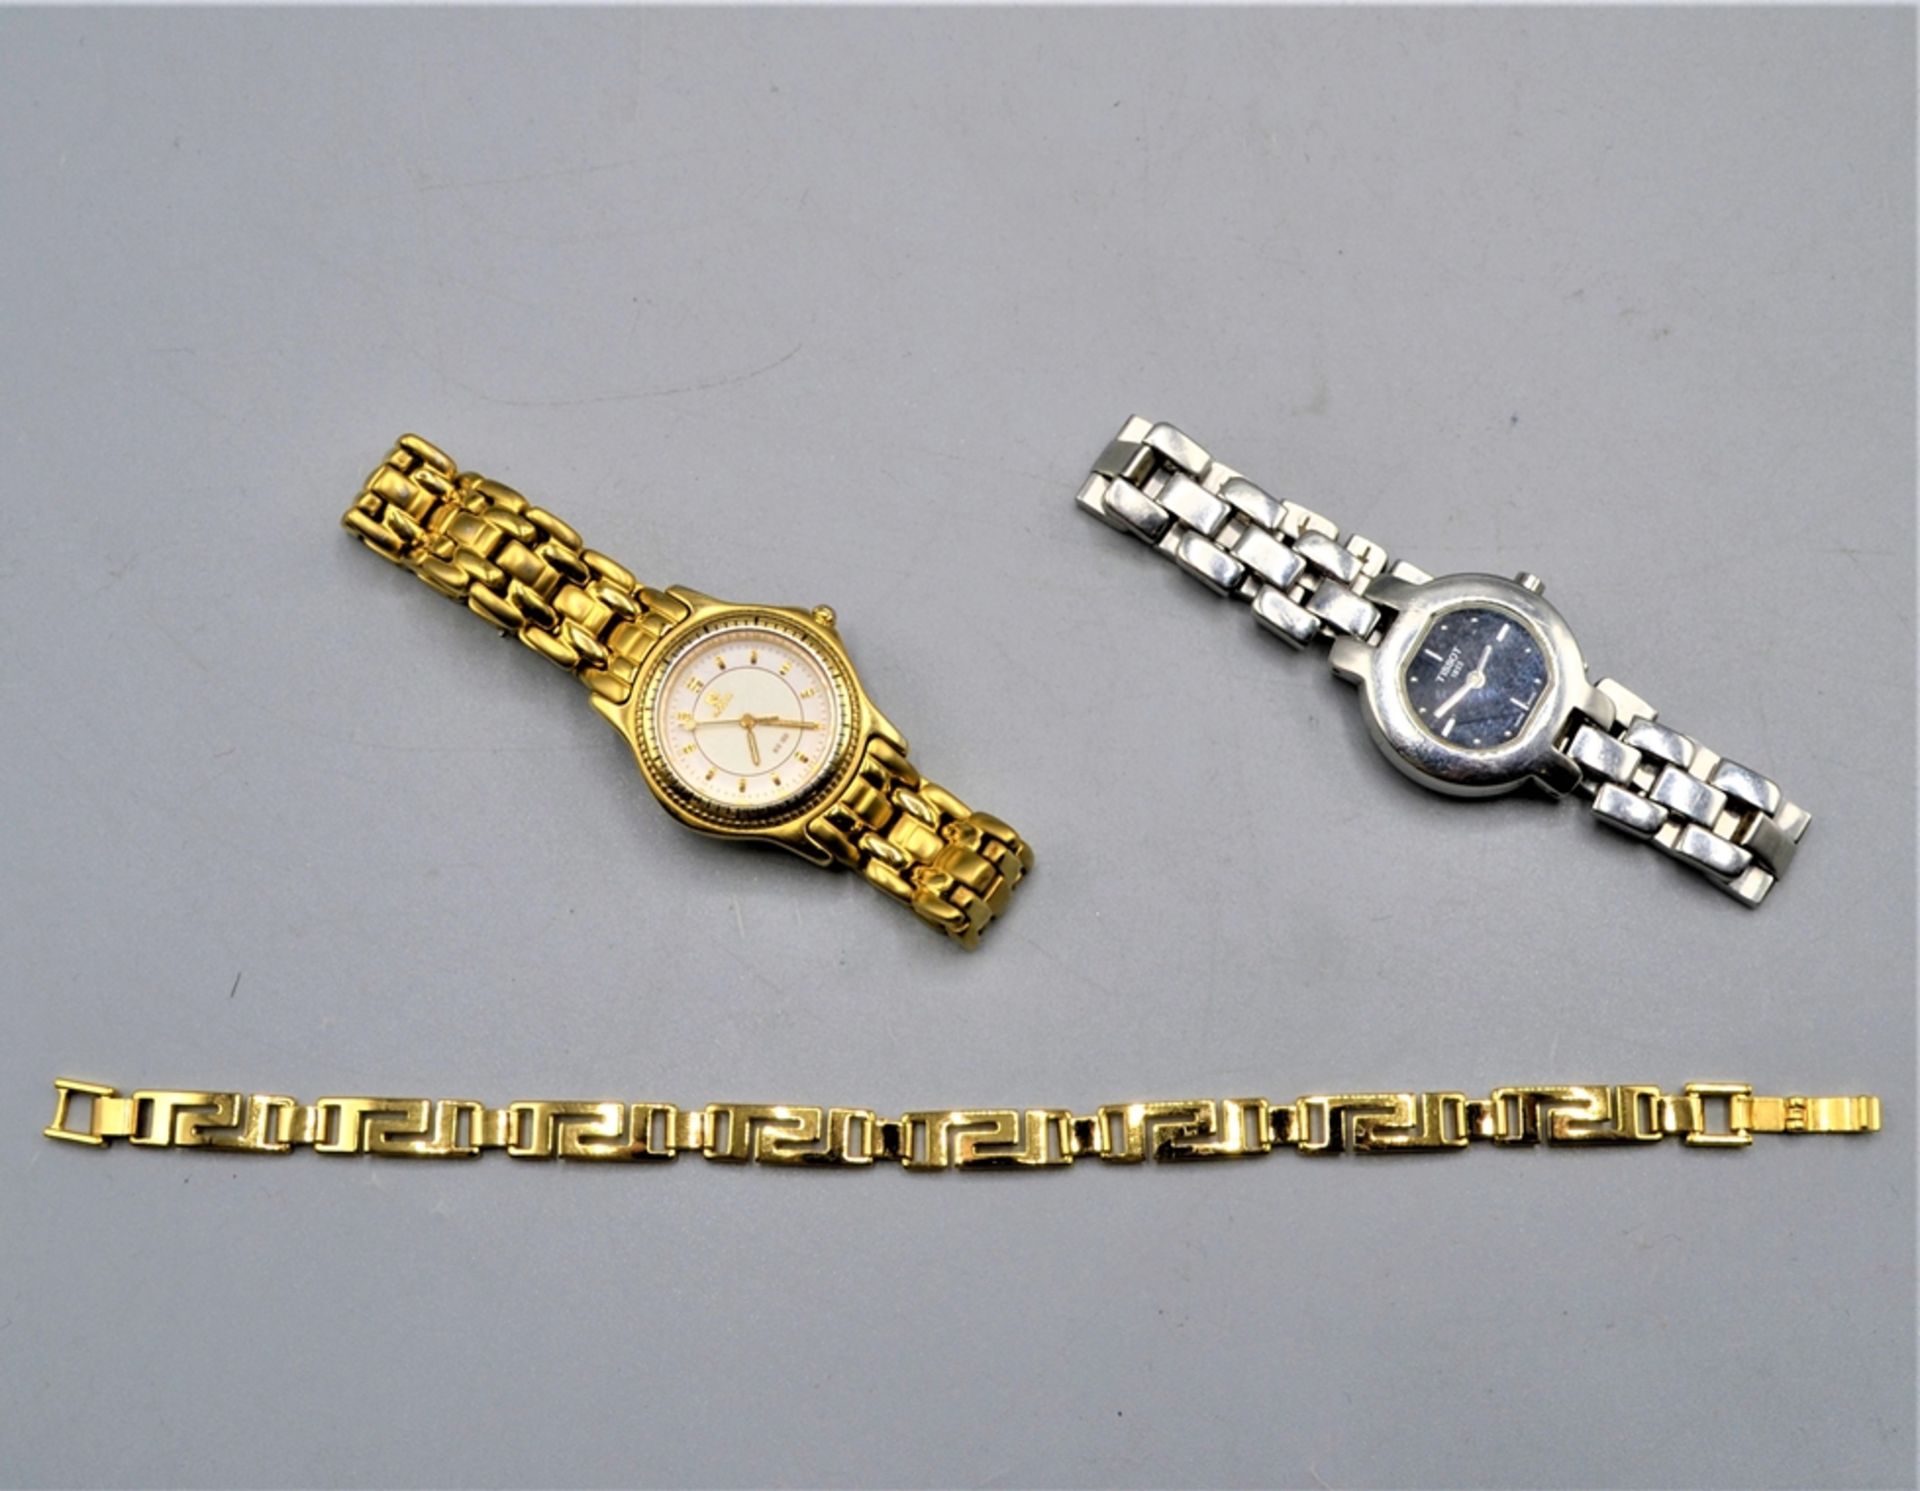 Uhren Schmuck Konvolut 3-teilig, Tissot G330, Noblia WR 100, vergoldetes Armband, alle Uhren ungete - Image 2 of 2